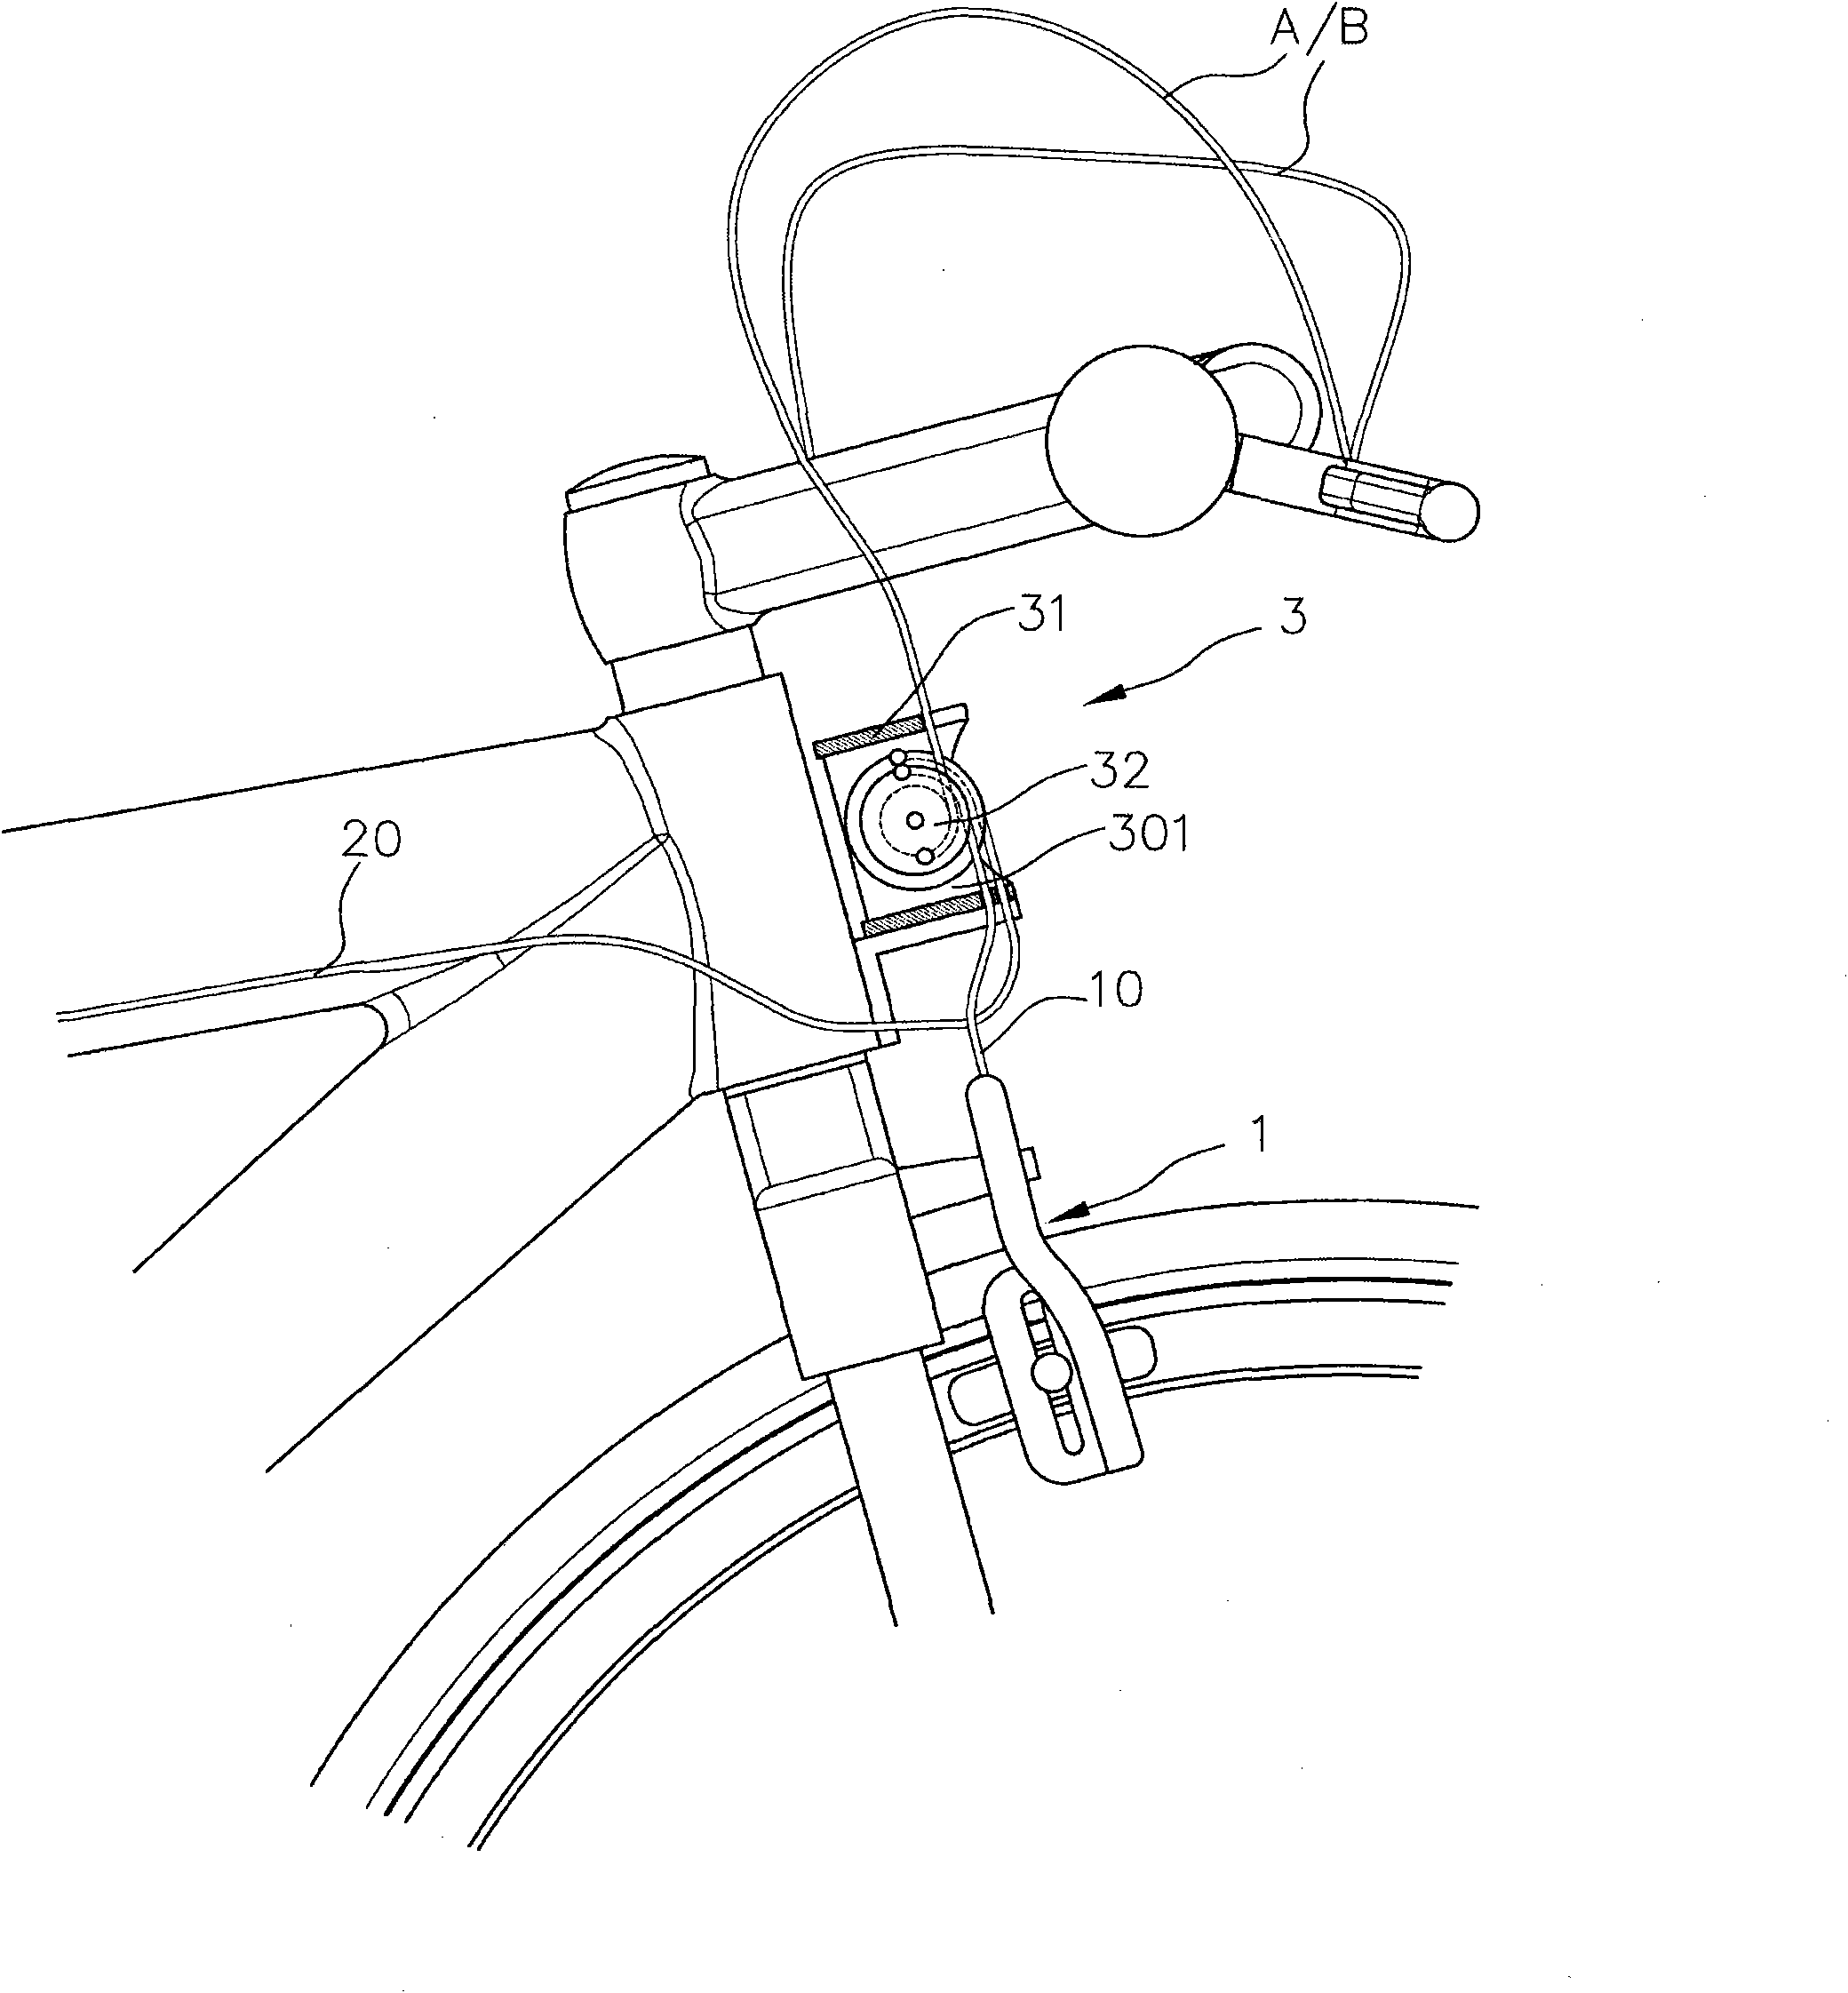 Brake linkage mechanism